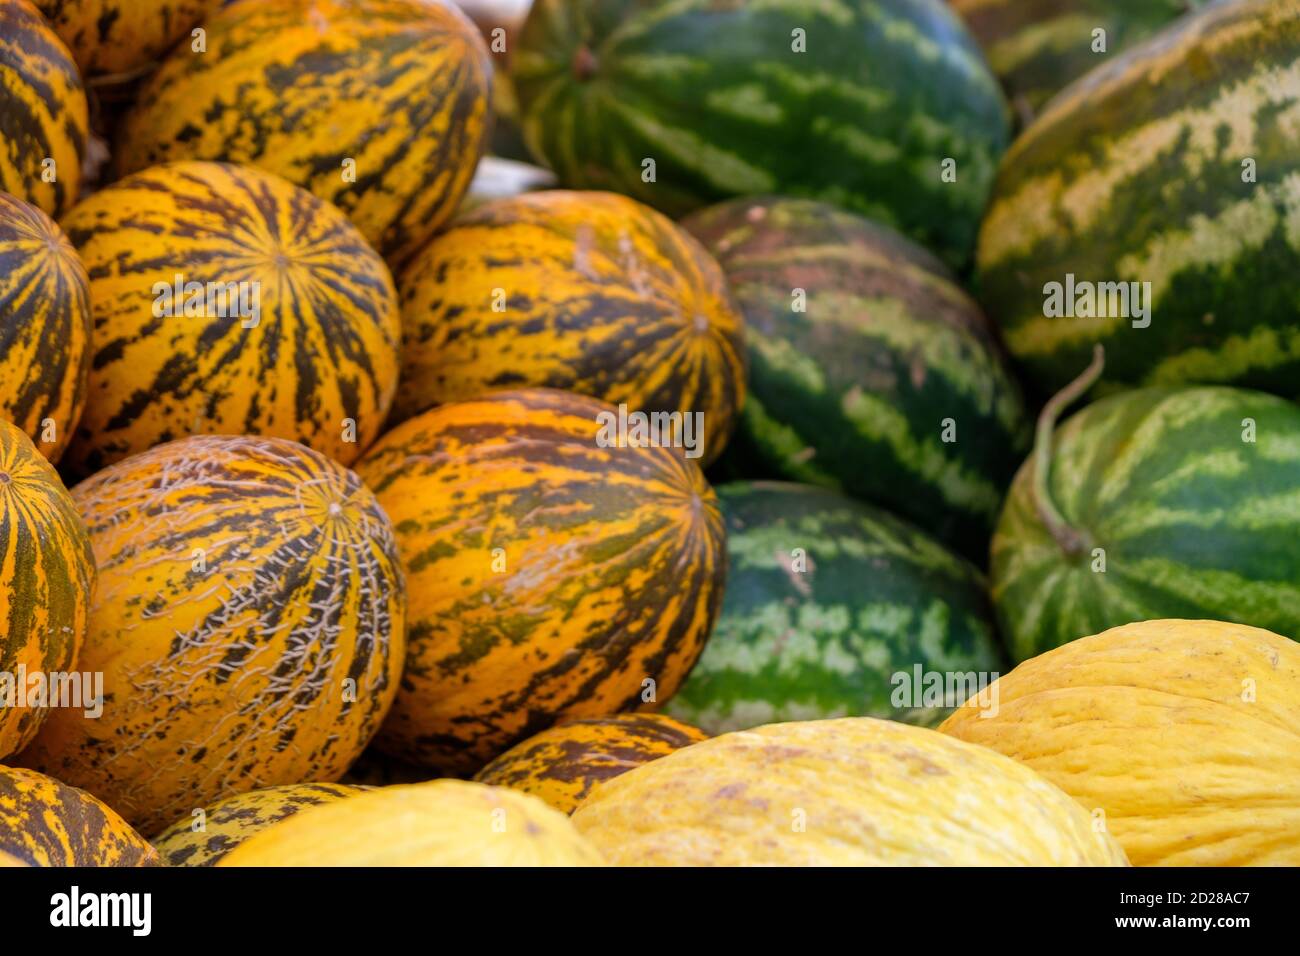 Primer plano de melones amarillos y anaranjados maduros y sandías verdes Foto de stock